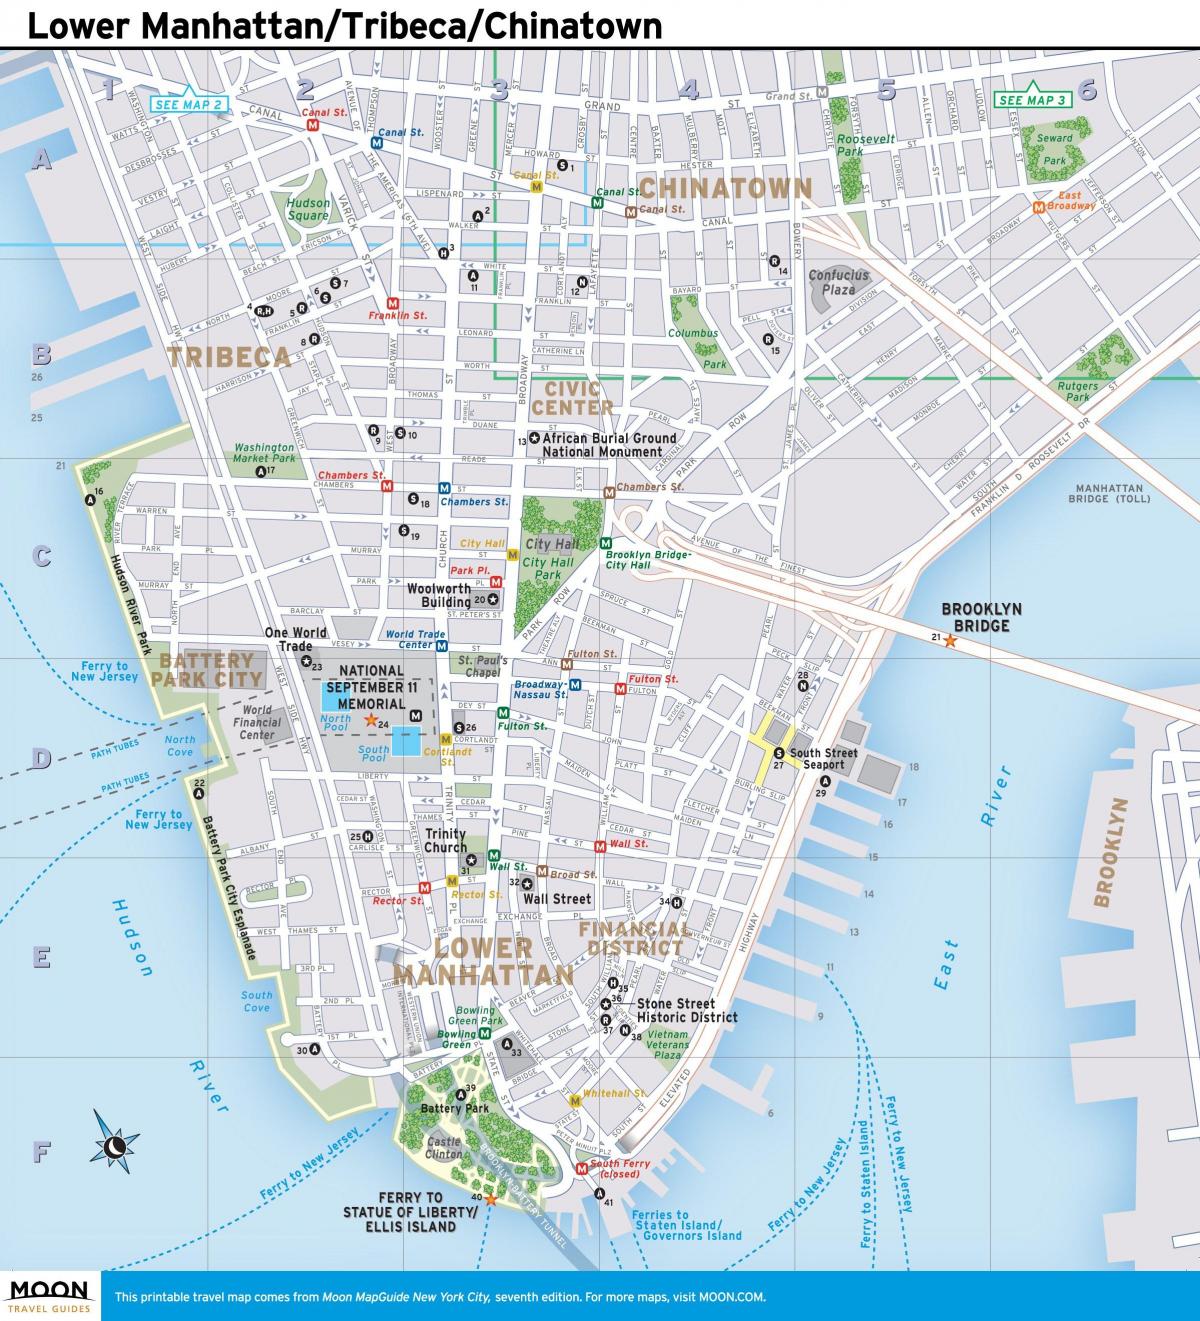 žemėlapis žemutiniame Manhetene ny